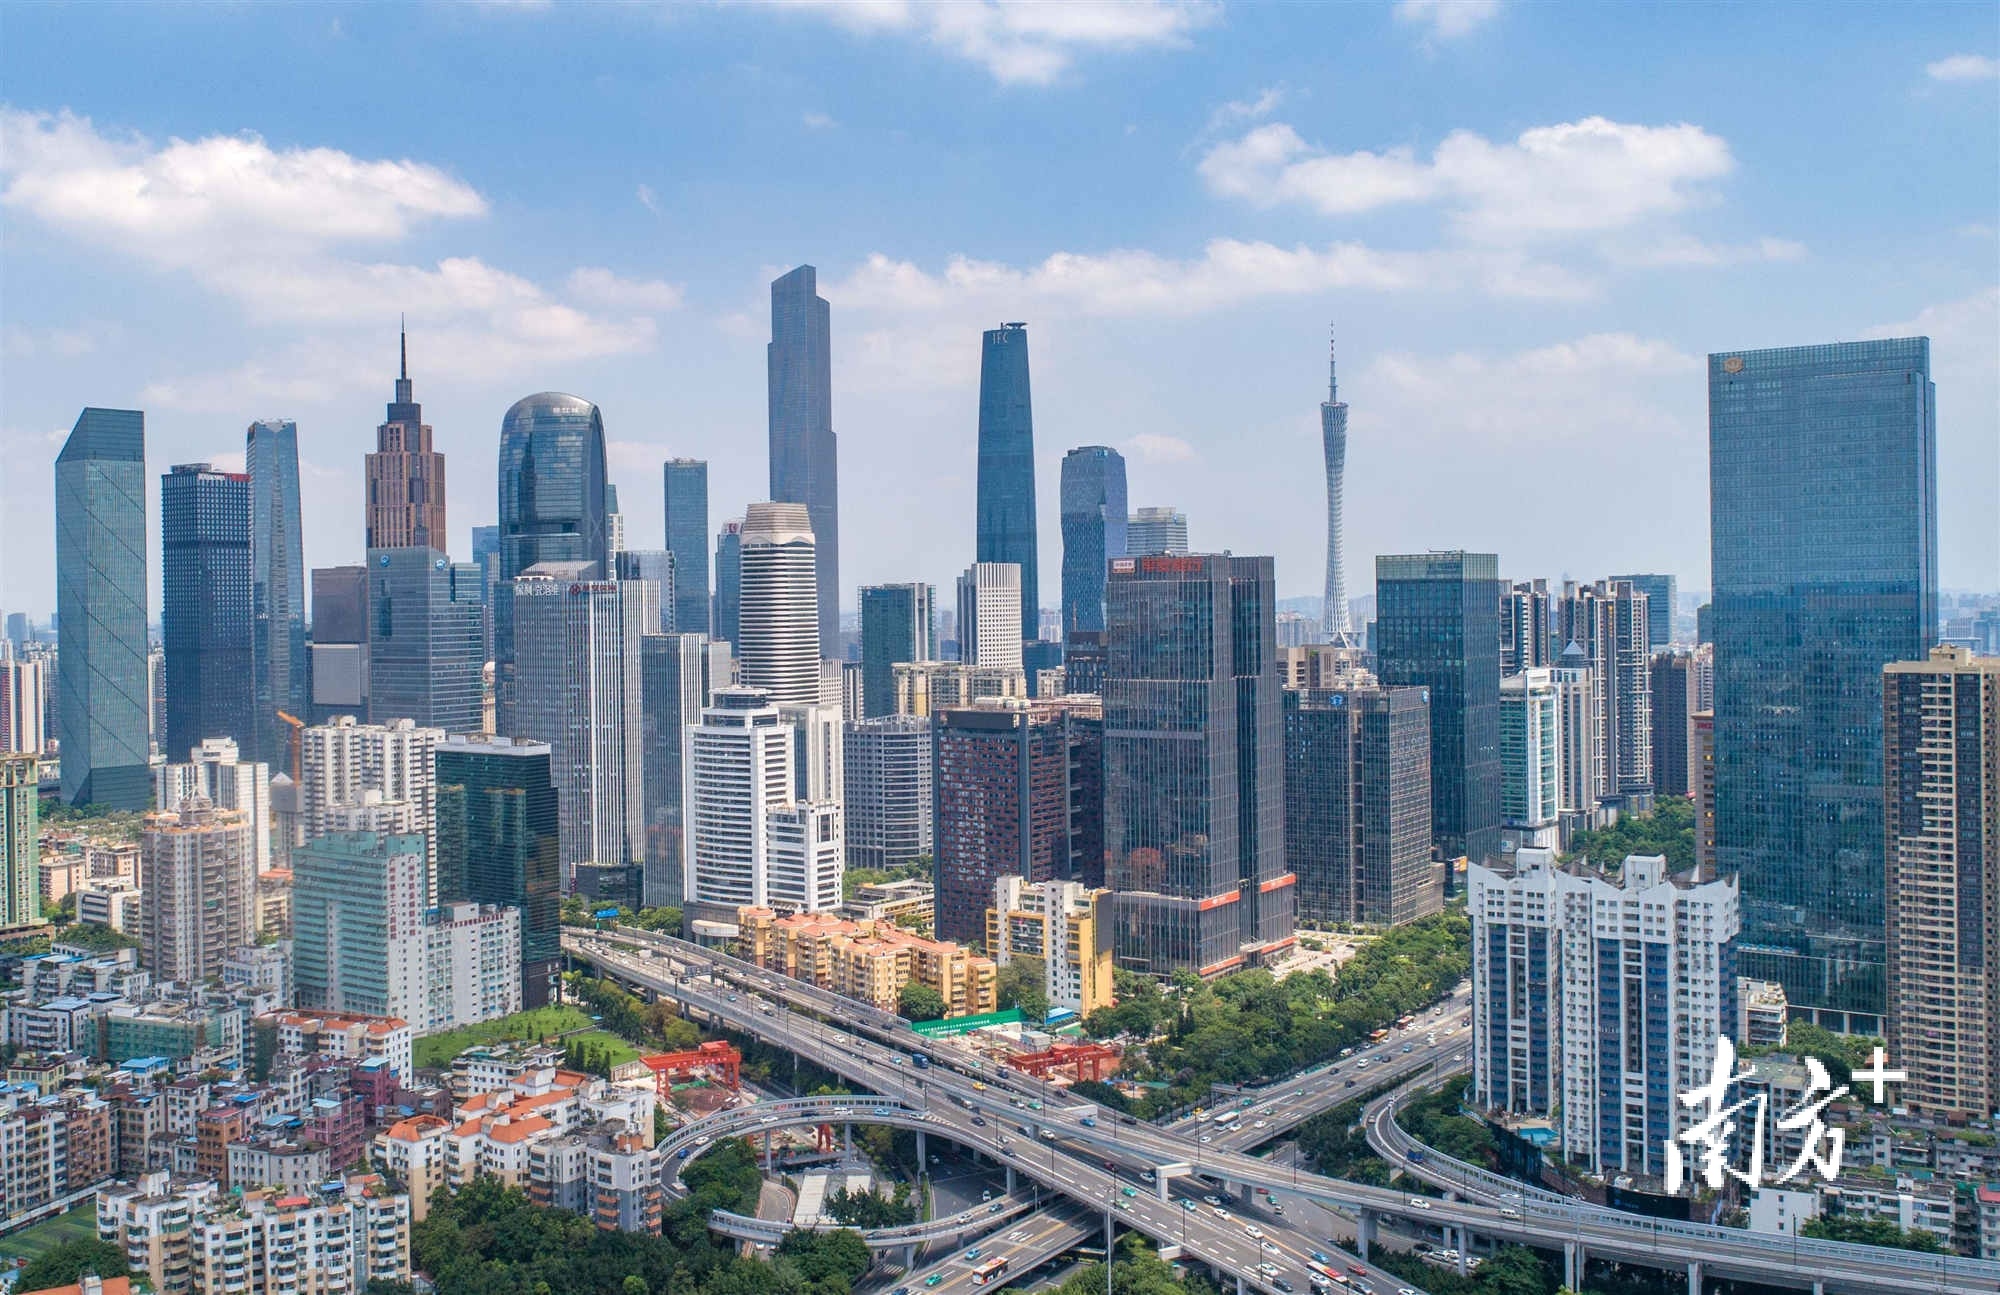 对此 广州正在借助建设国际消费中心城市的良机,全力赶上.